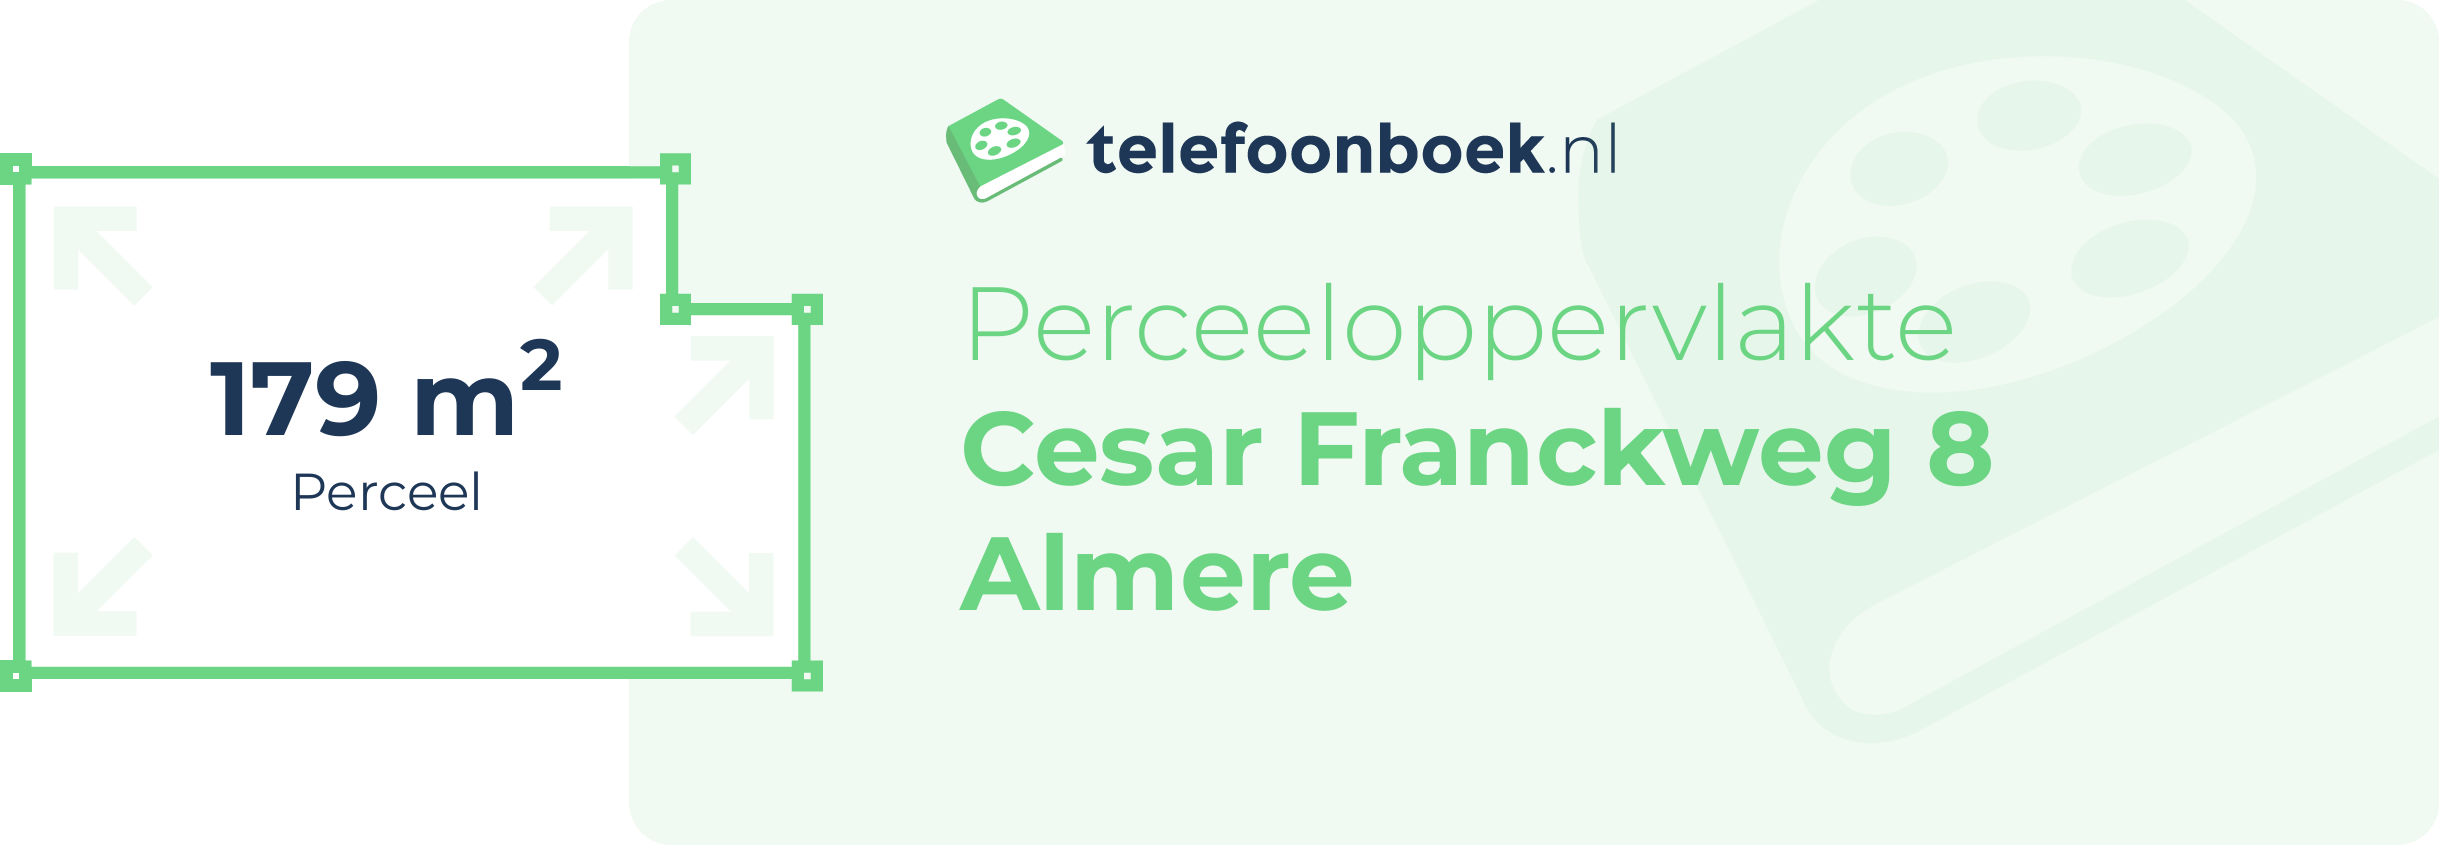 Perceeloppervlakte Cesar Franckweg 8 Almere